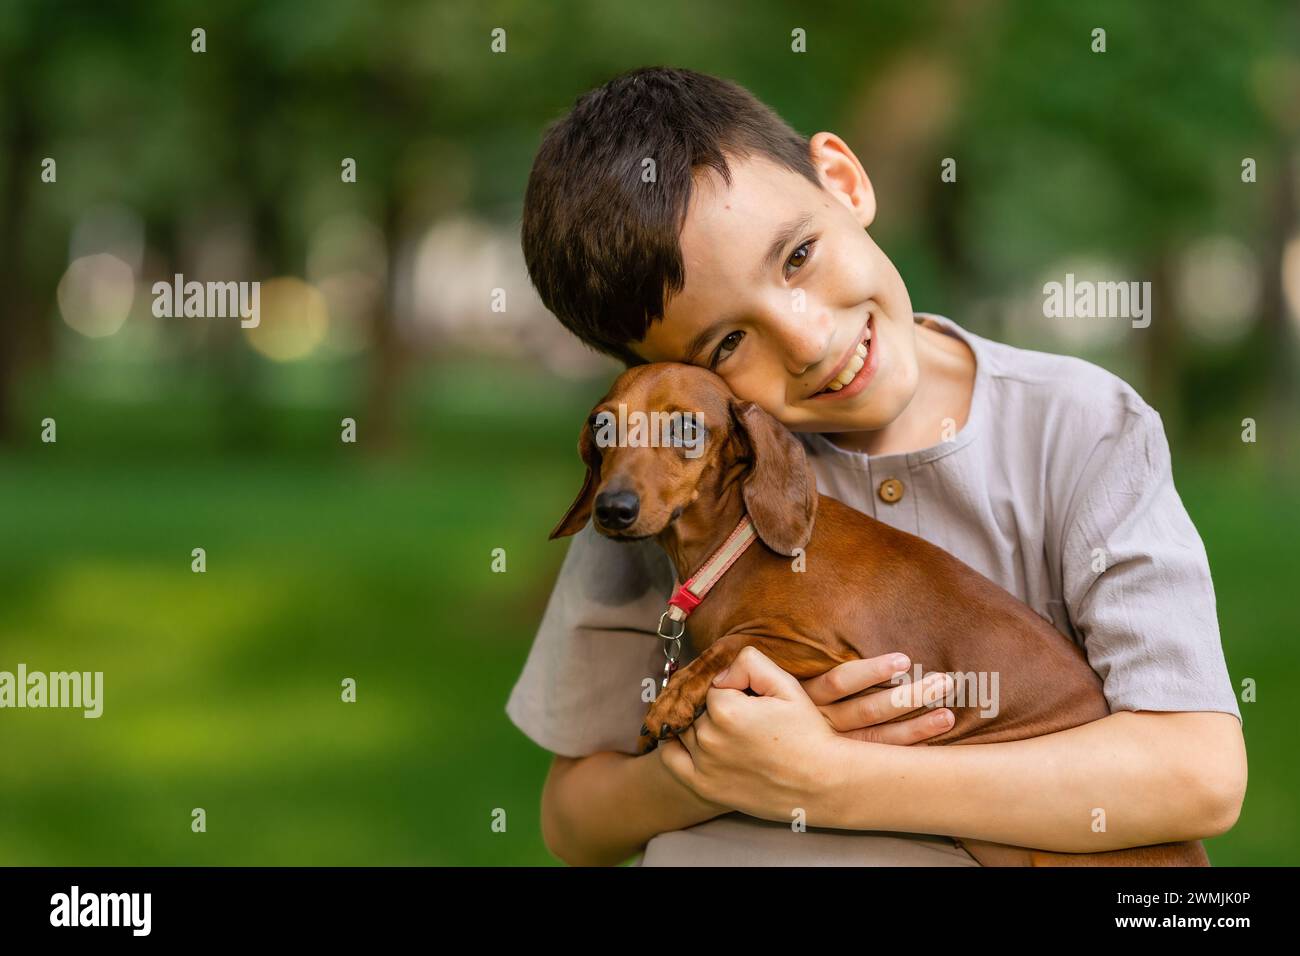 mignon garçon tient un chien teckel dans ses bras pendant une promenade estivale. Photo de haute qualité Banque D'Images